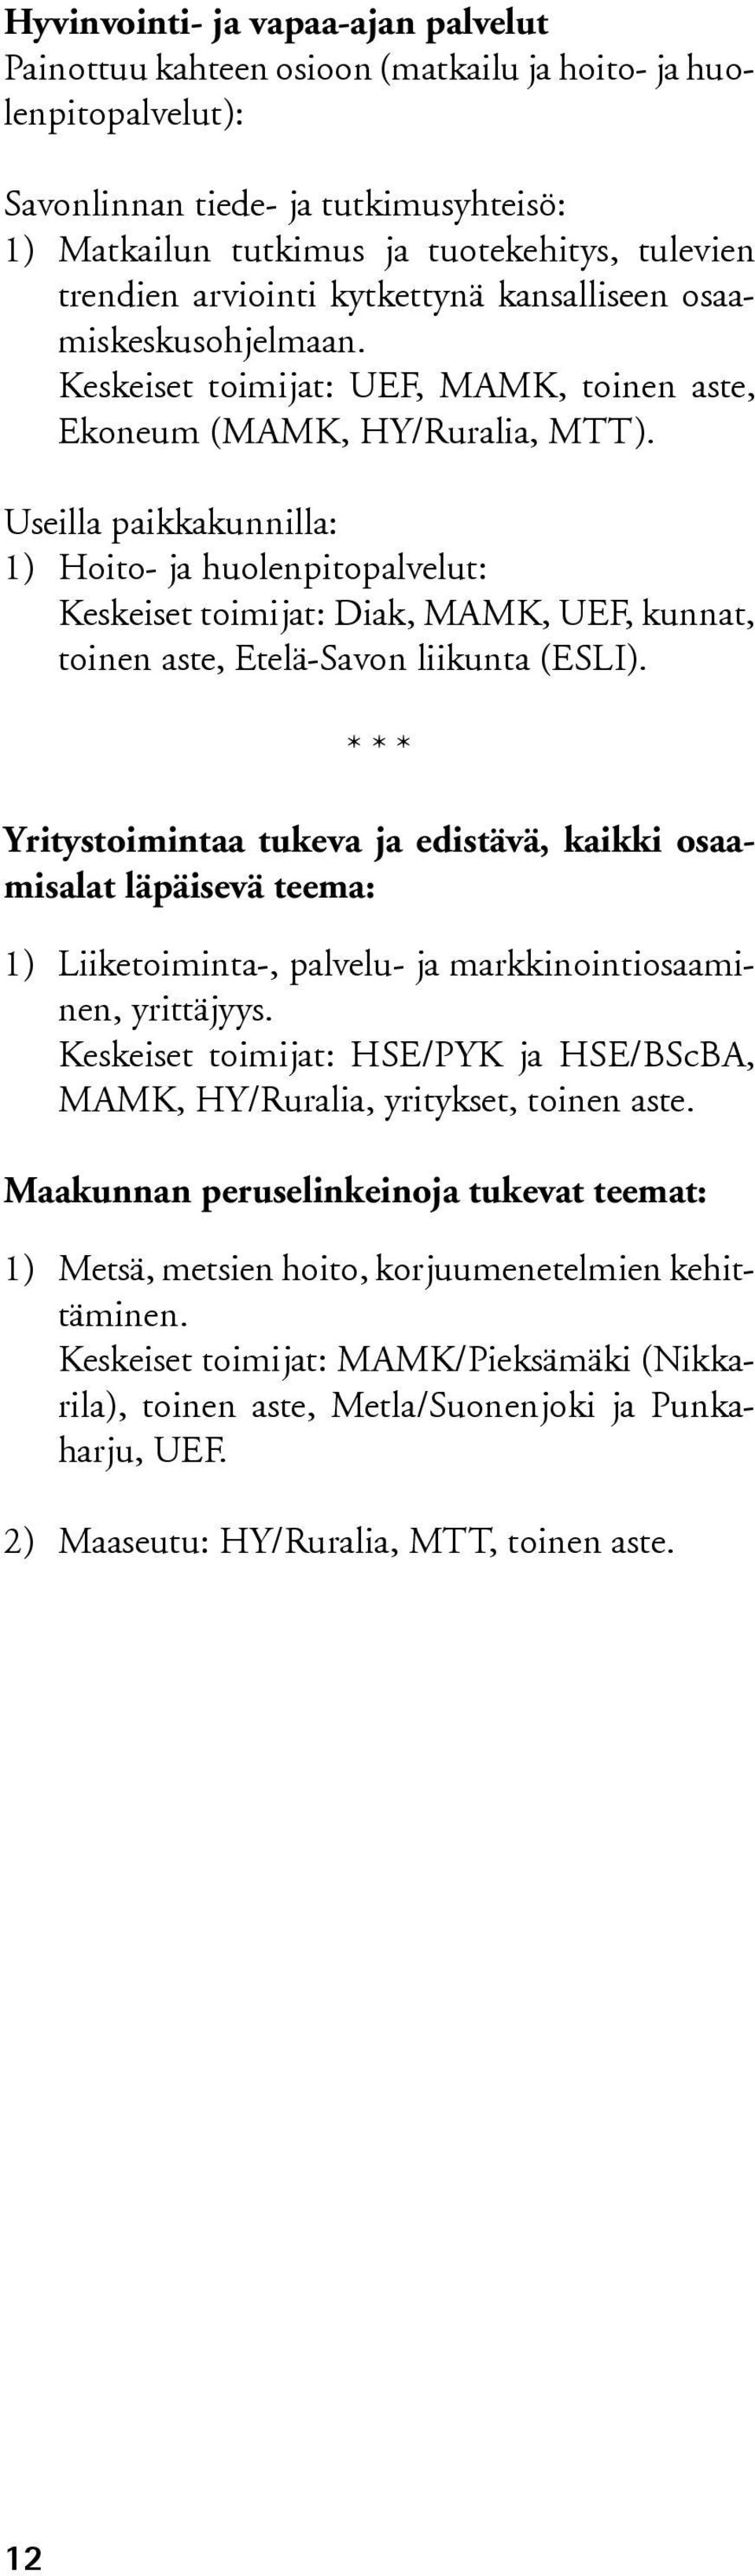 Useilla paikkakunnilla: 1) Hoito- ja huolenpitopalvelut: Keskeiset toimijat: Diak, MAMK, UEF, kunnat, toinen aste, Etelä-Savon liikunta (ESLI).